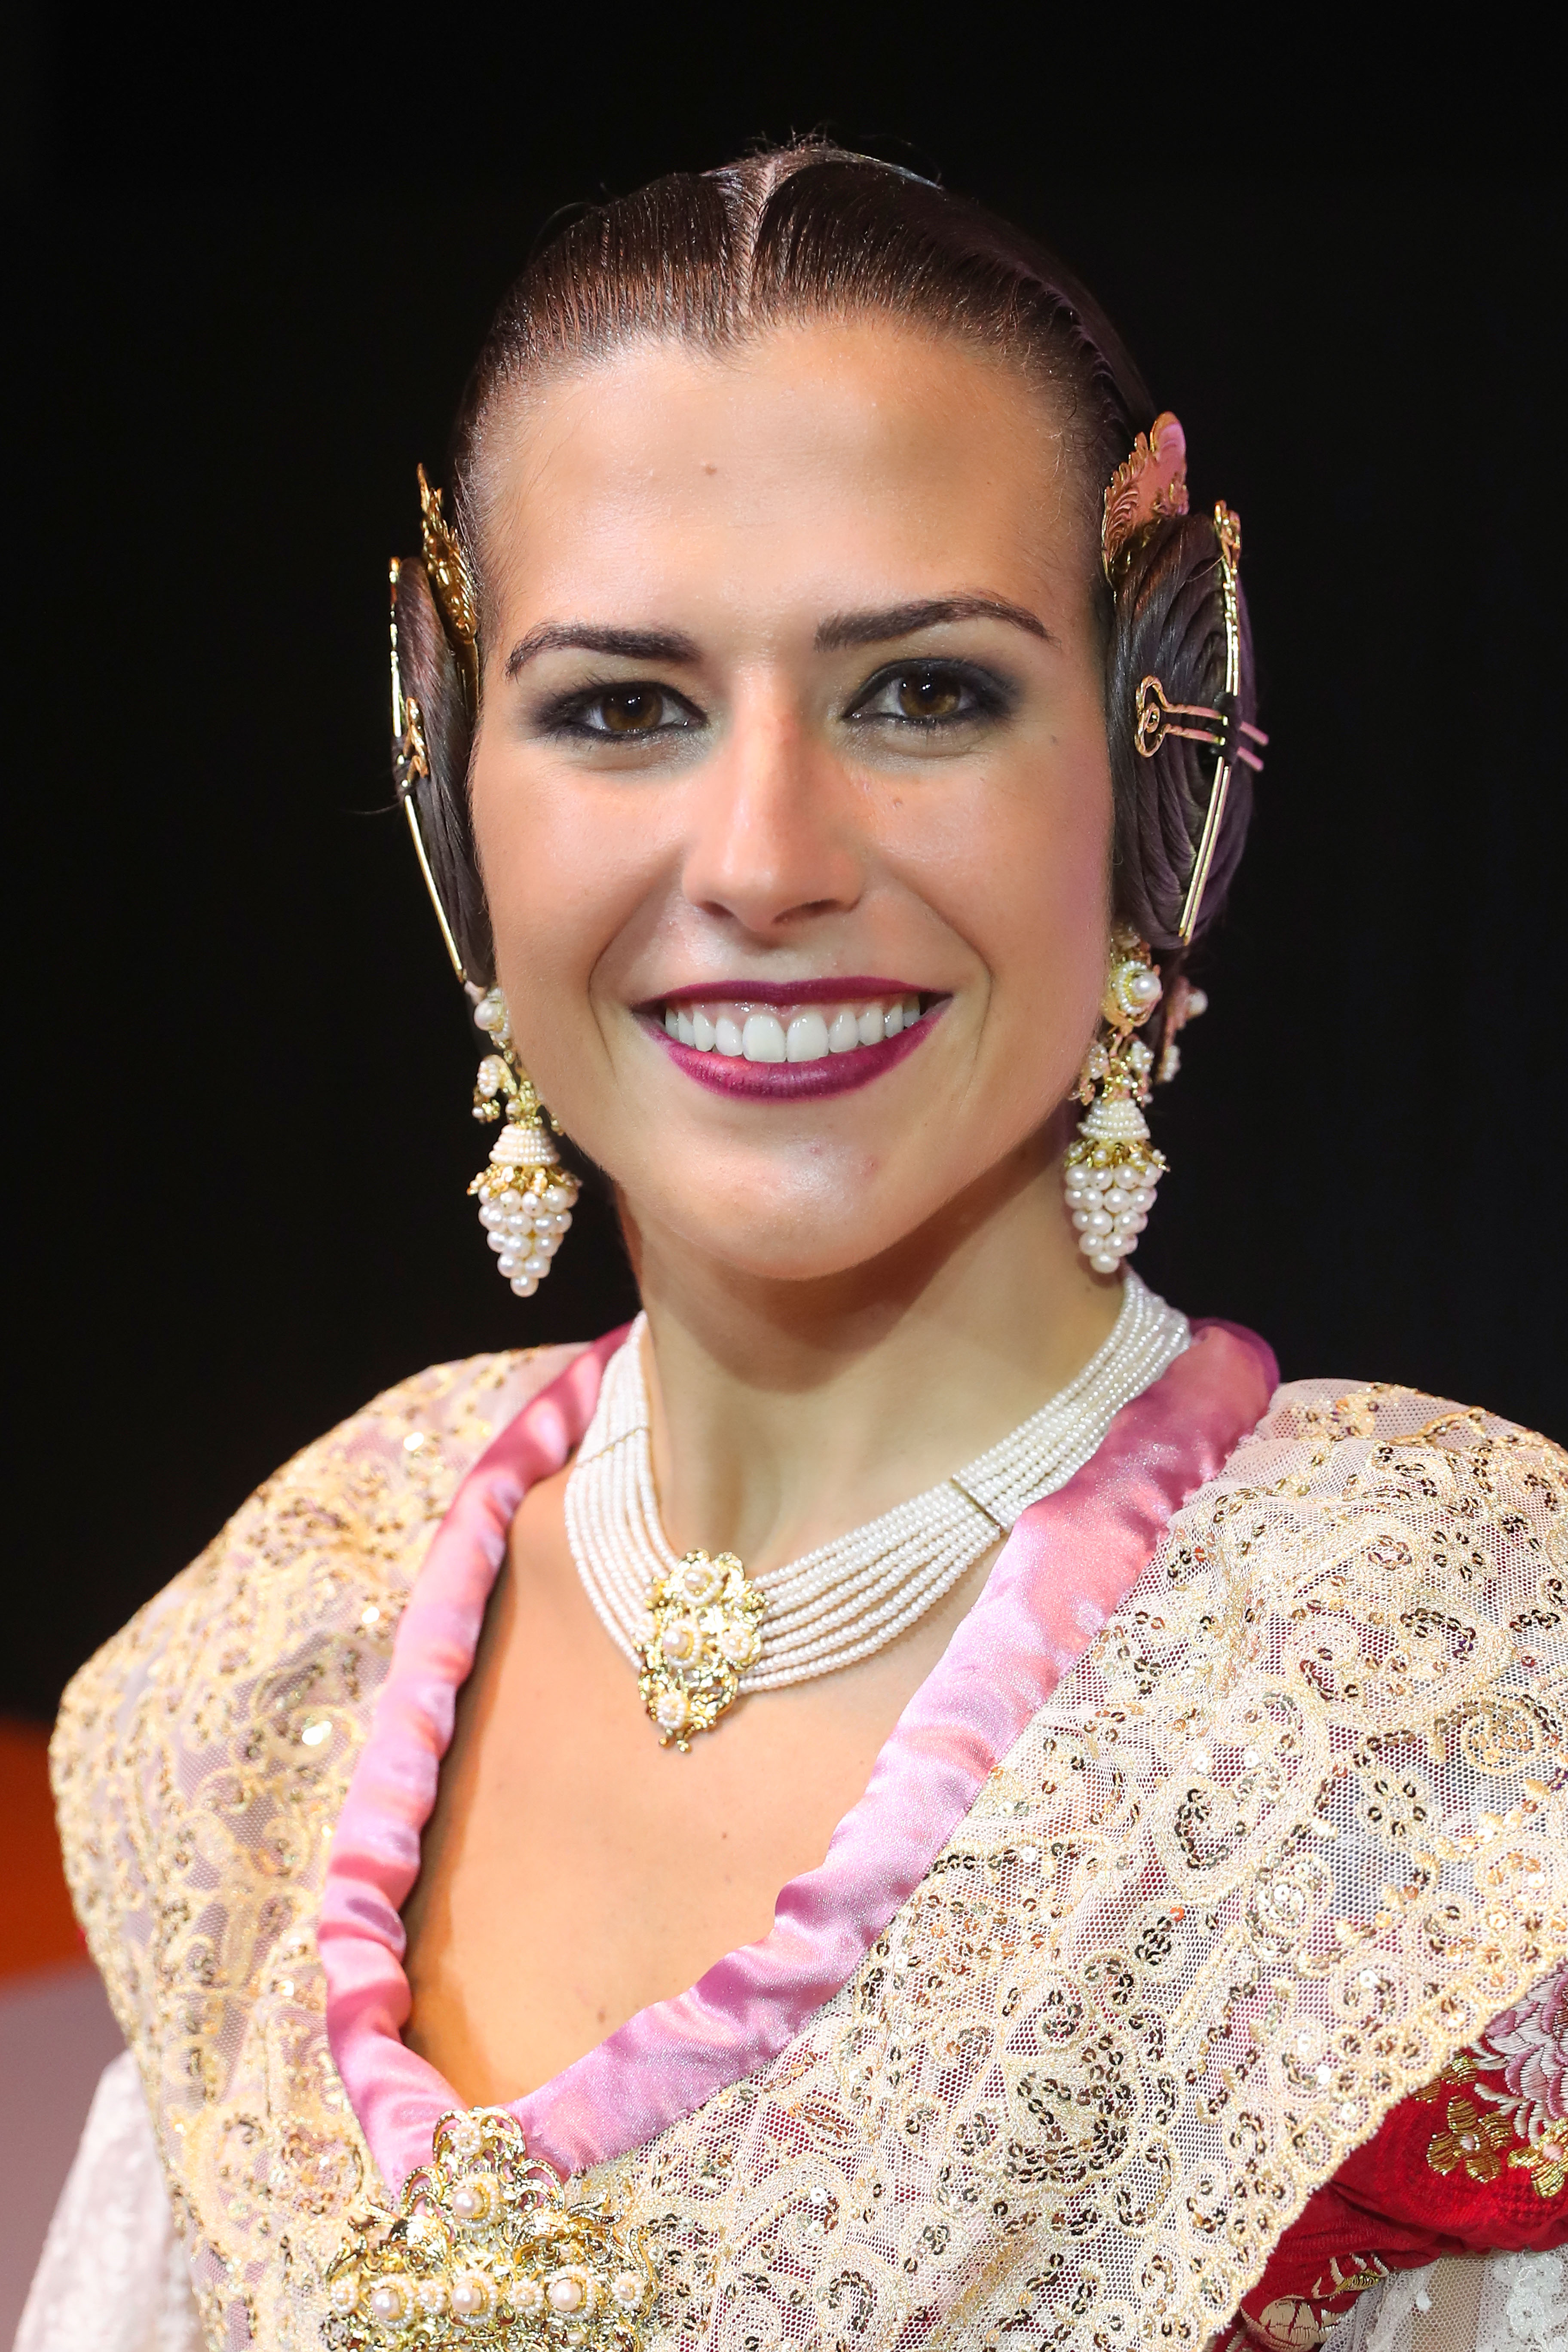 Claudia Rodríguez Blanco